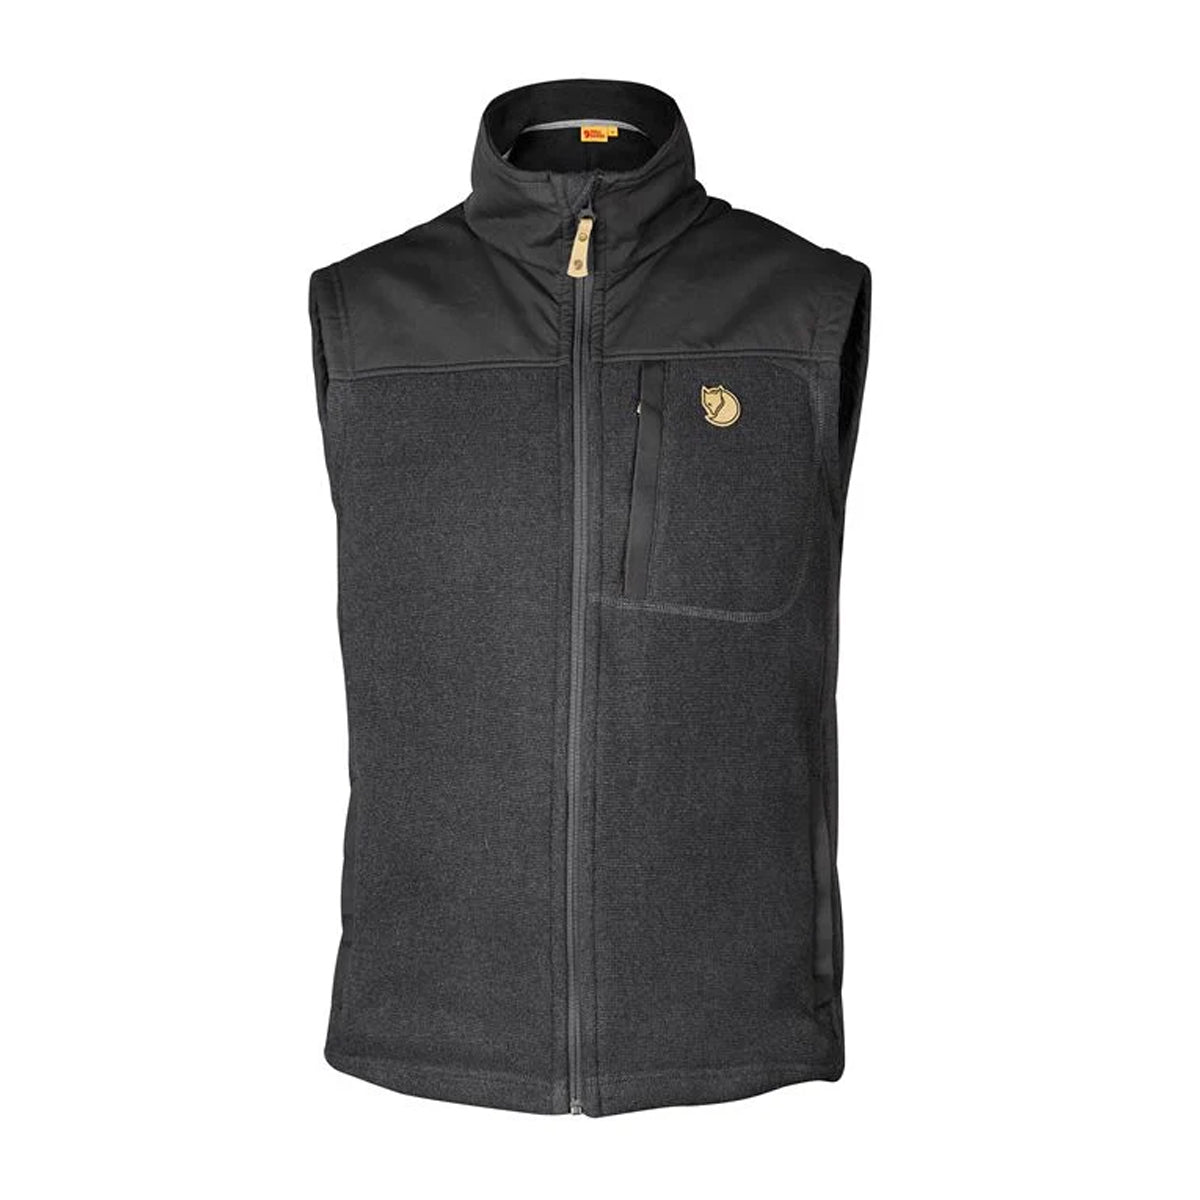 Fjallraven Buck Fleece Vest in  by GOHUNT | Fjallraven - GOHUNT Shop